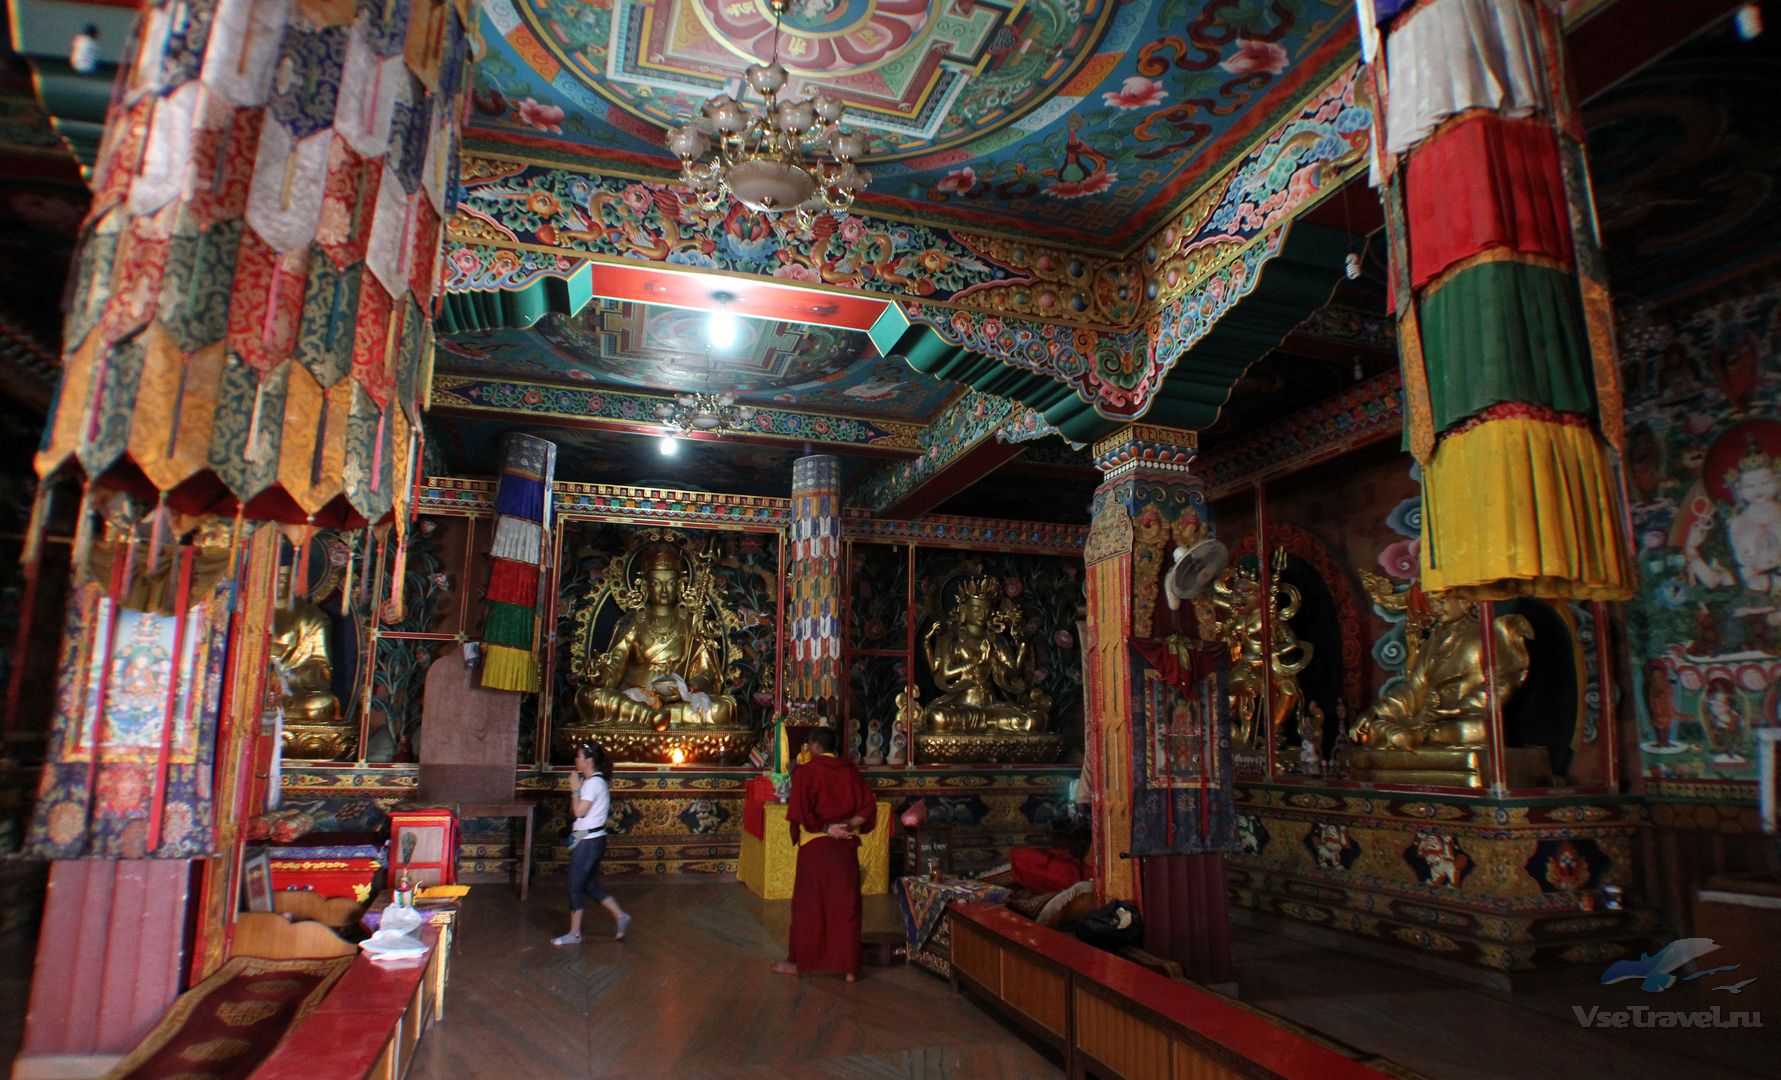 Внутреннее убранство православного и буддийского храма. Дворец Потала Тибет интерьер. Буддистский храм Тибет внутри. Интерьер буддийского храма Тибет. Дворец Потала в Лхасе внутреннее убранство.